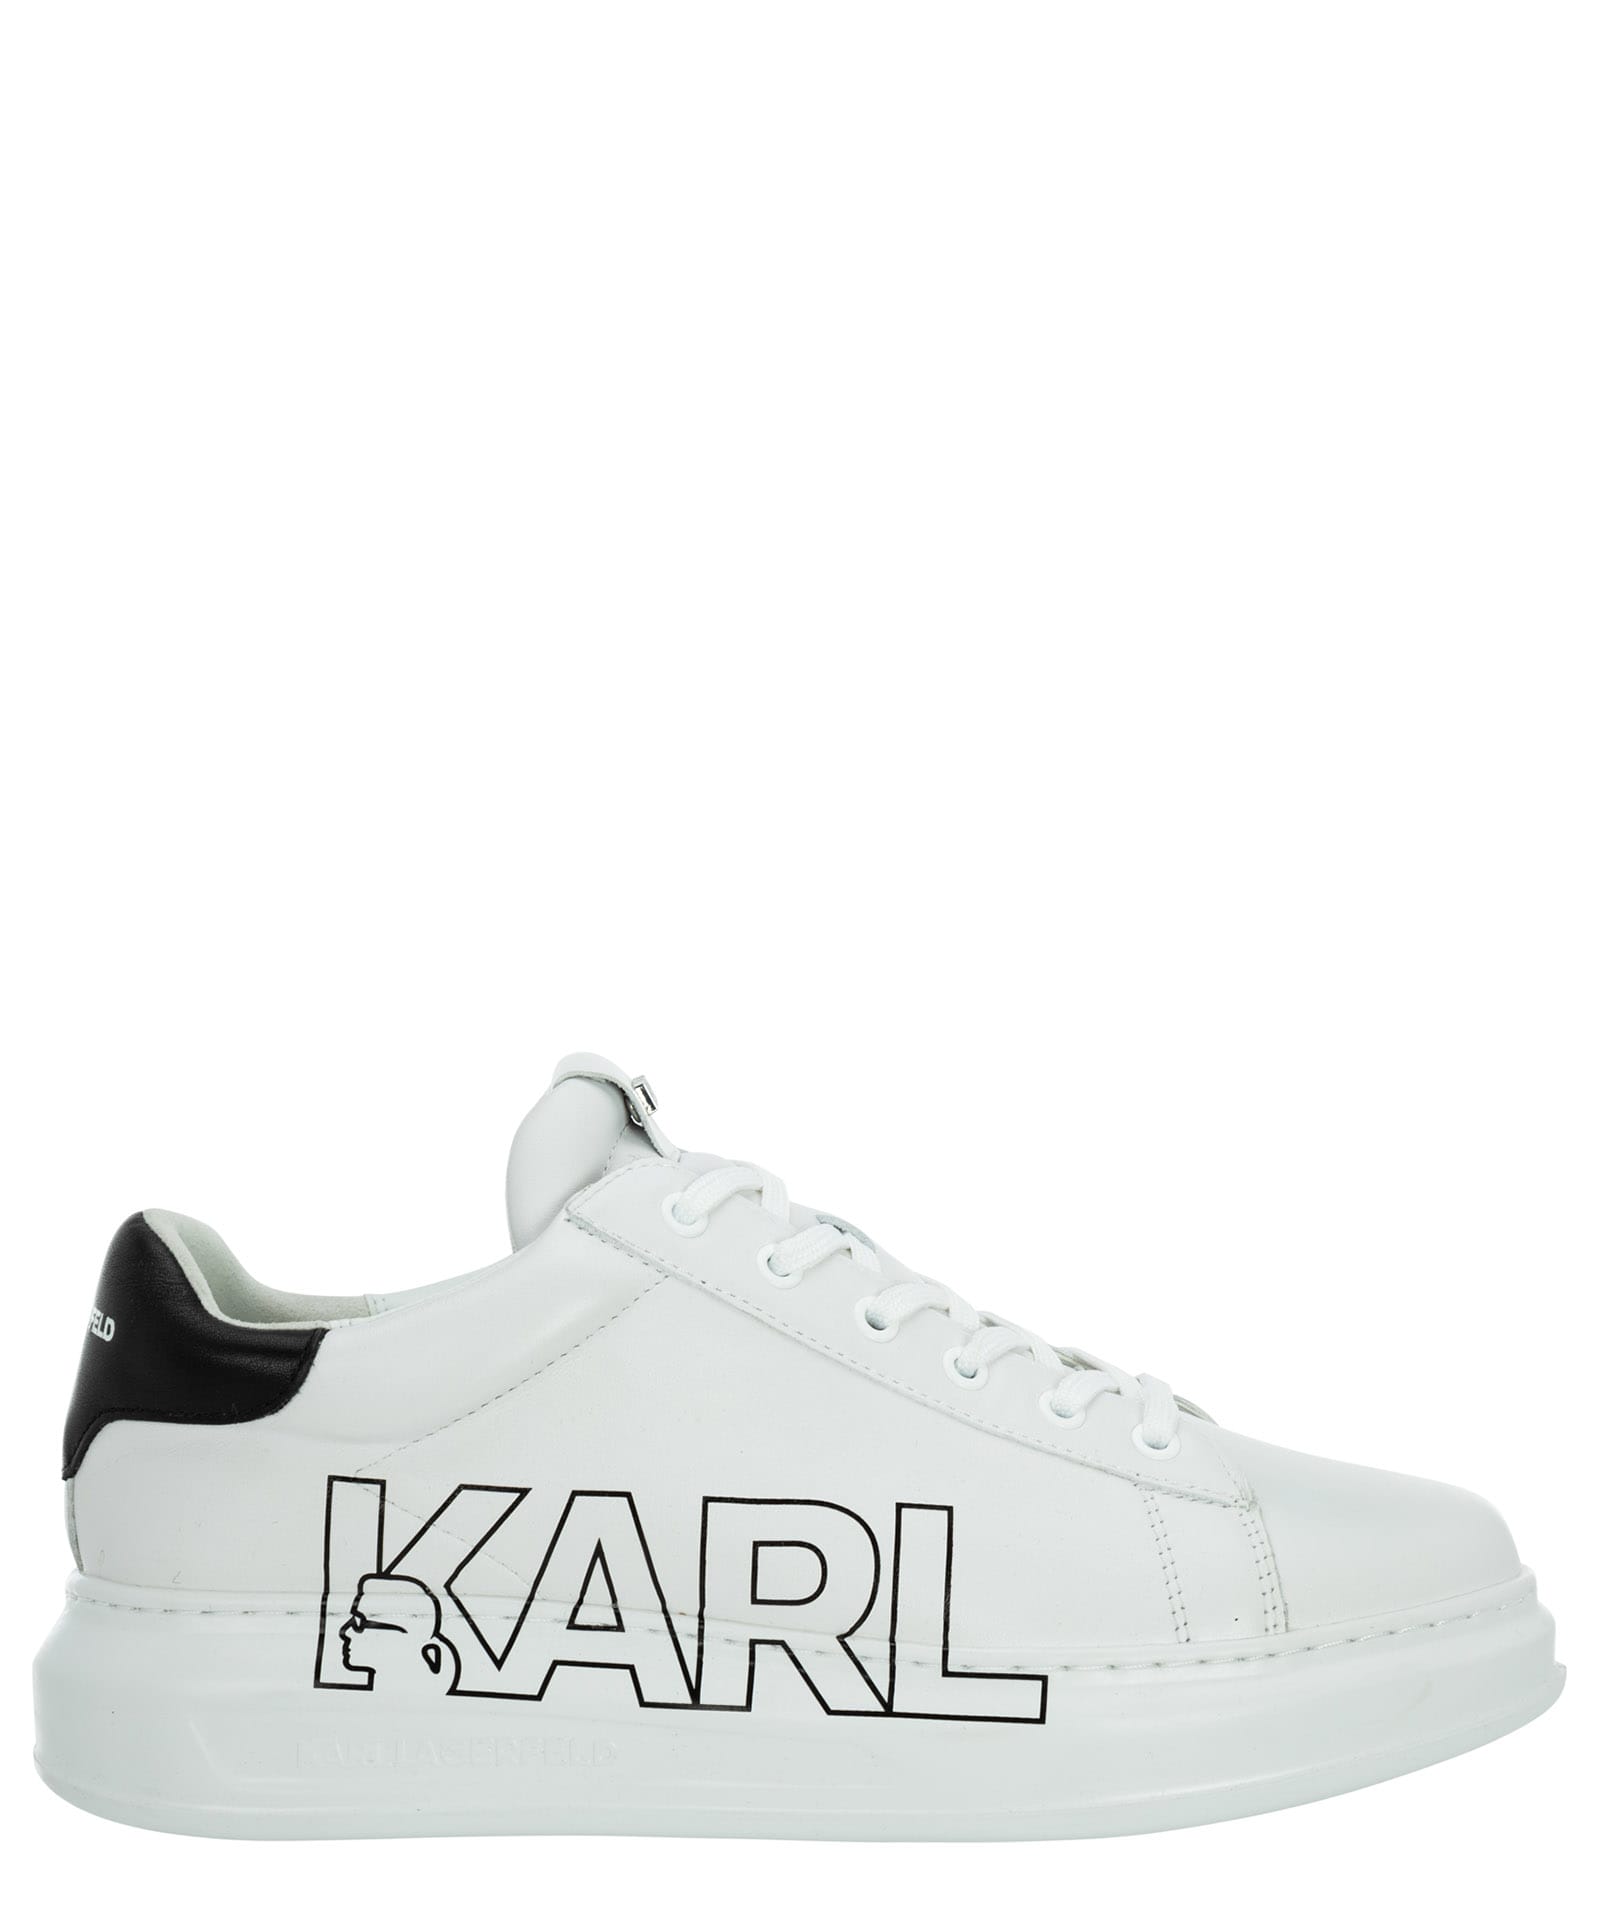 Karl Lagerfeld Kapri Leather Sneakers